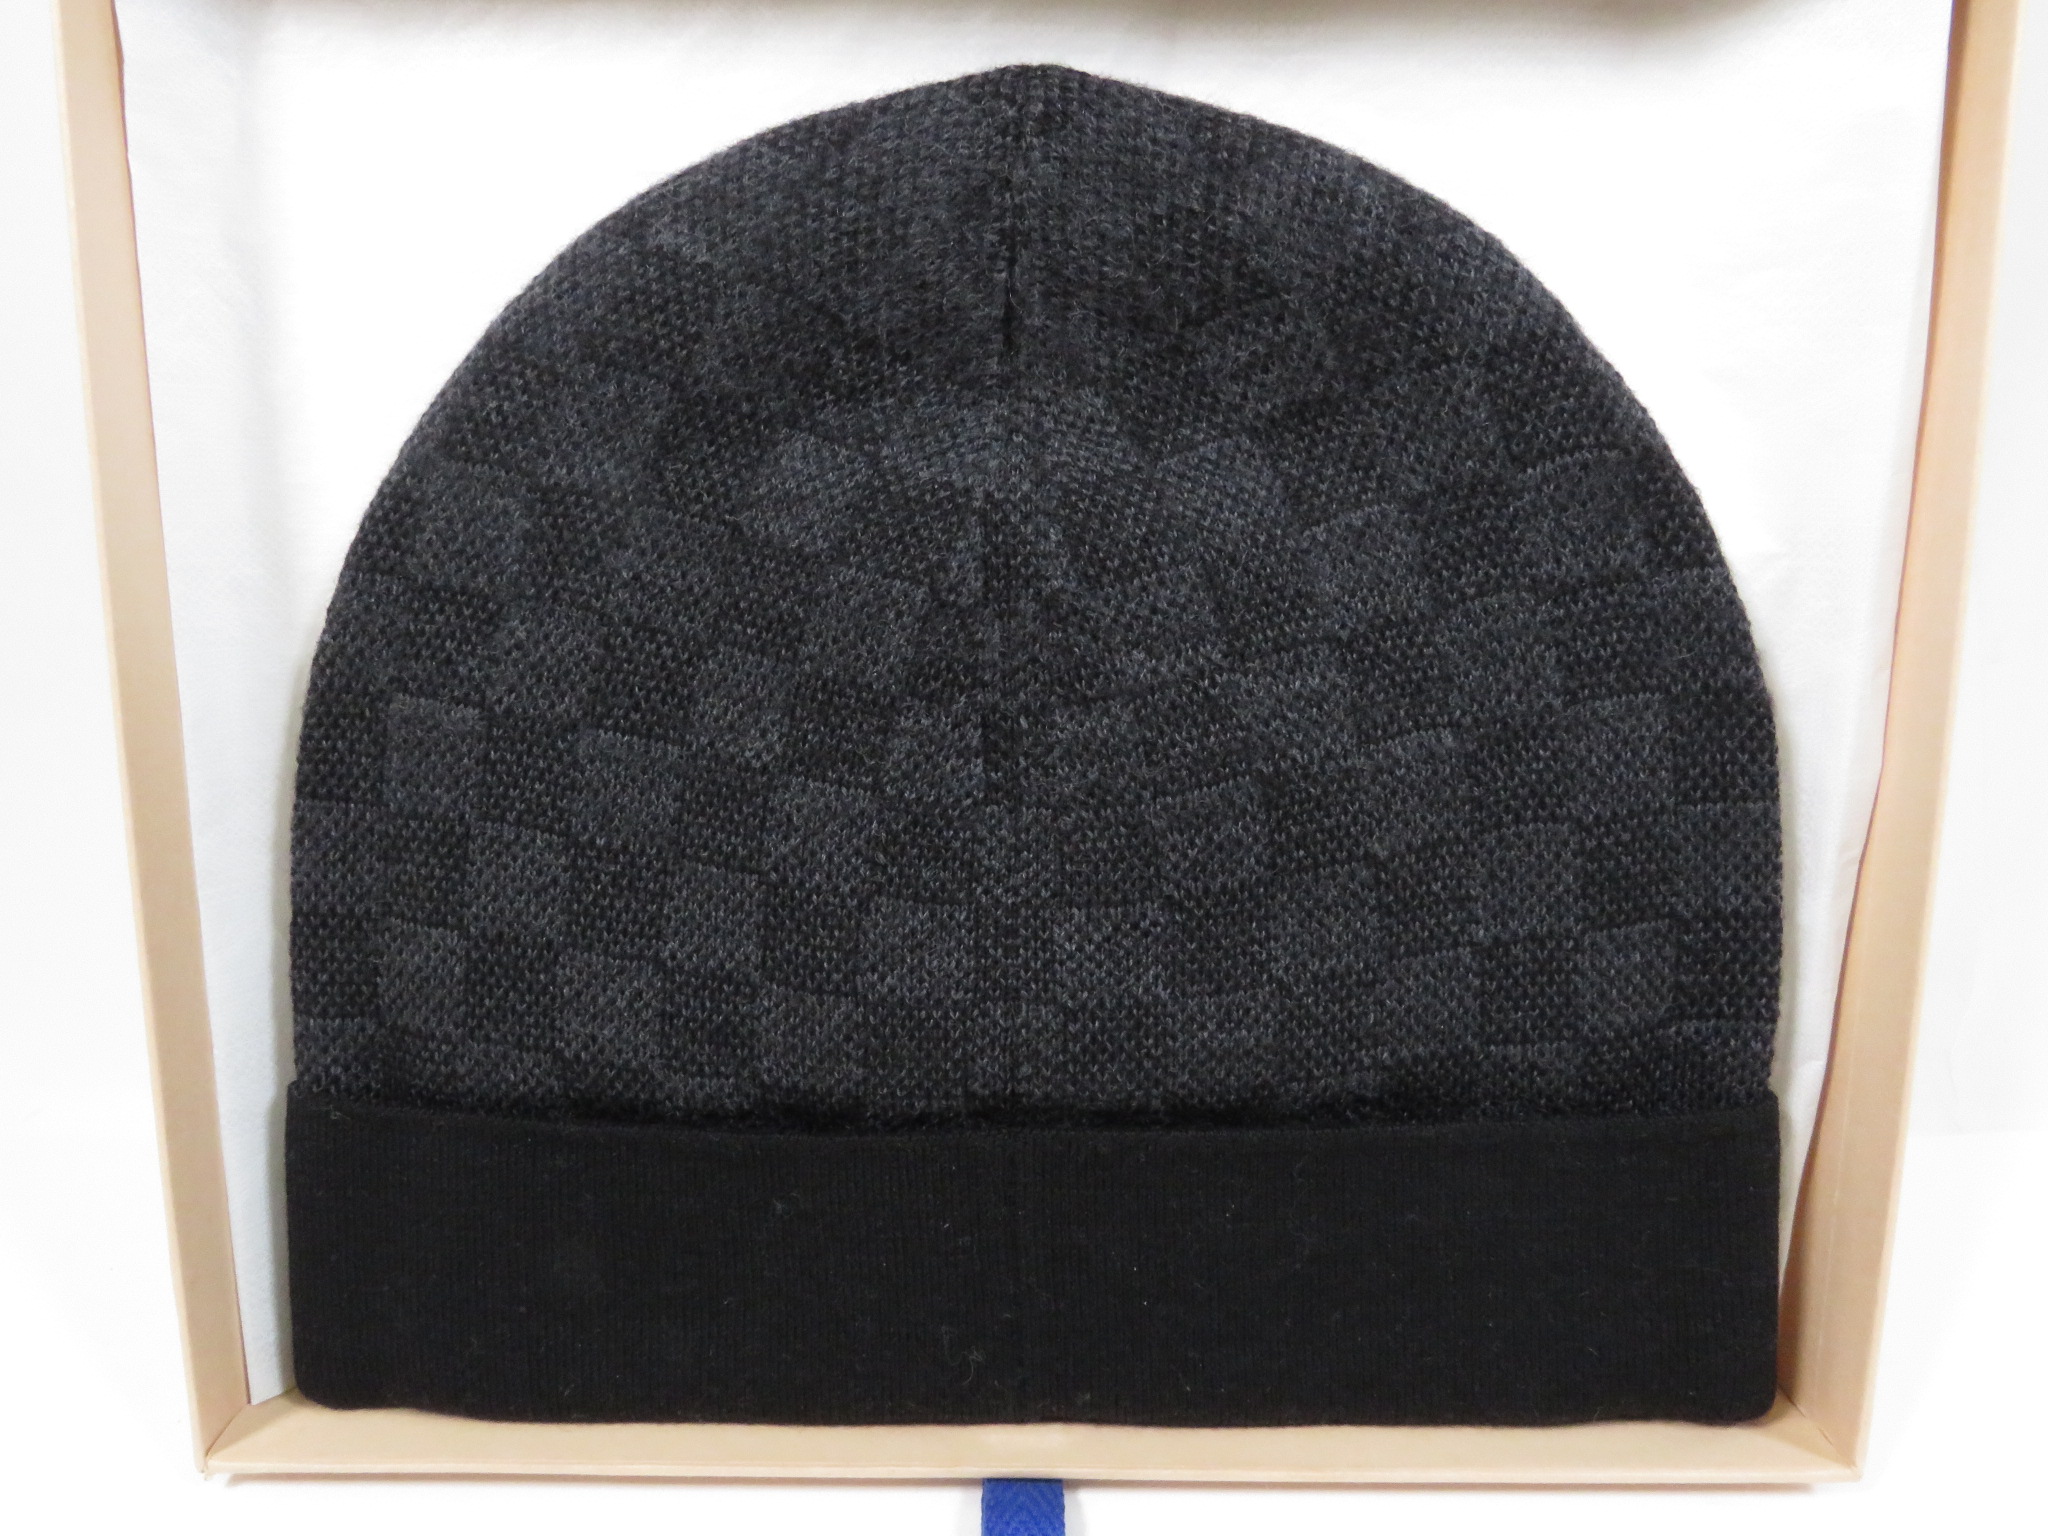 Shop Louis Vuitton Petit damier hat (M70930, M70009, M70011